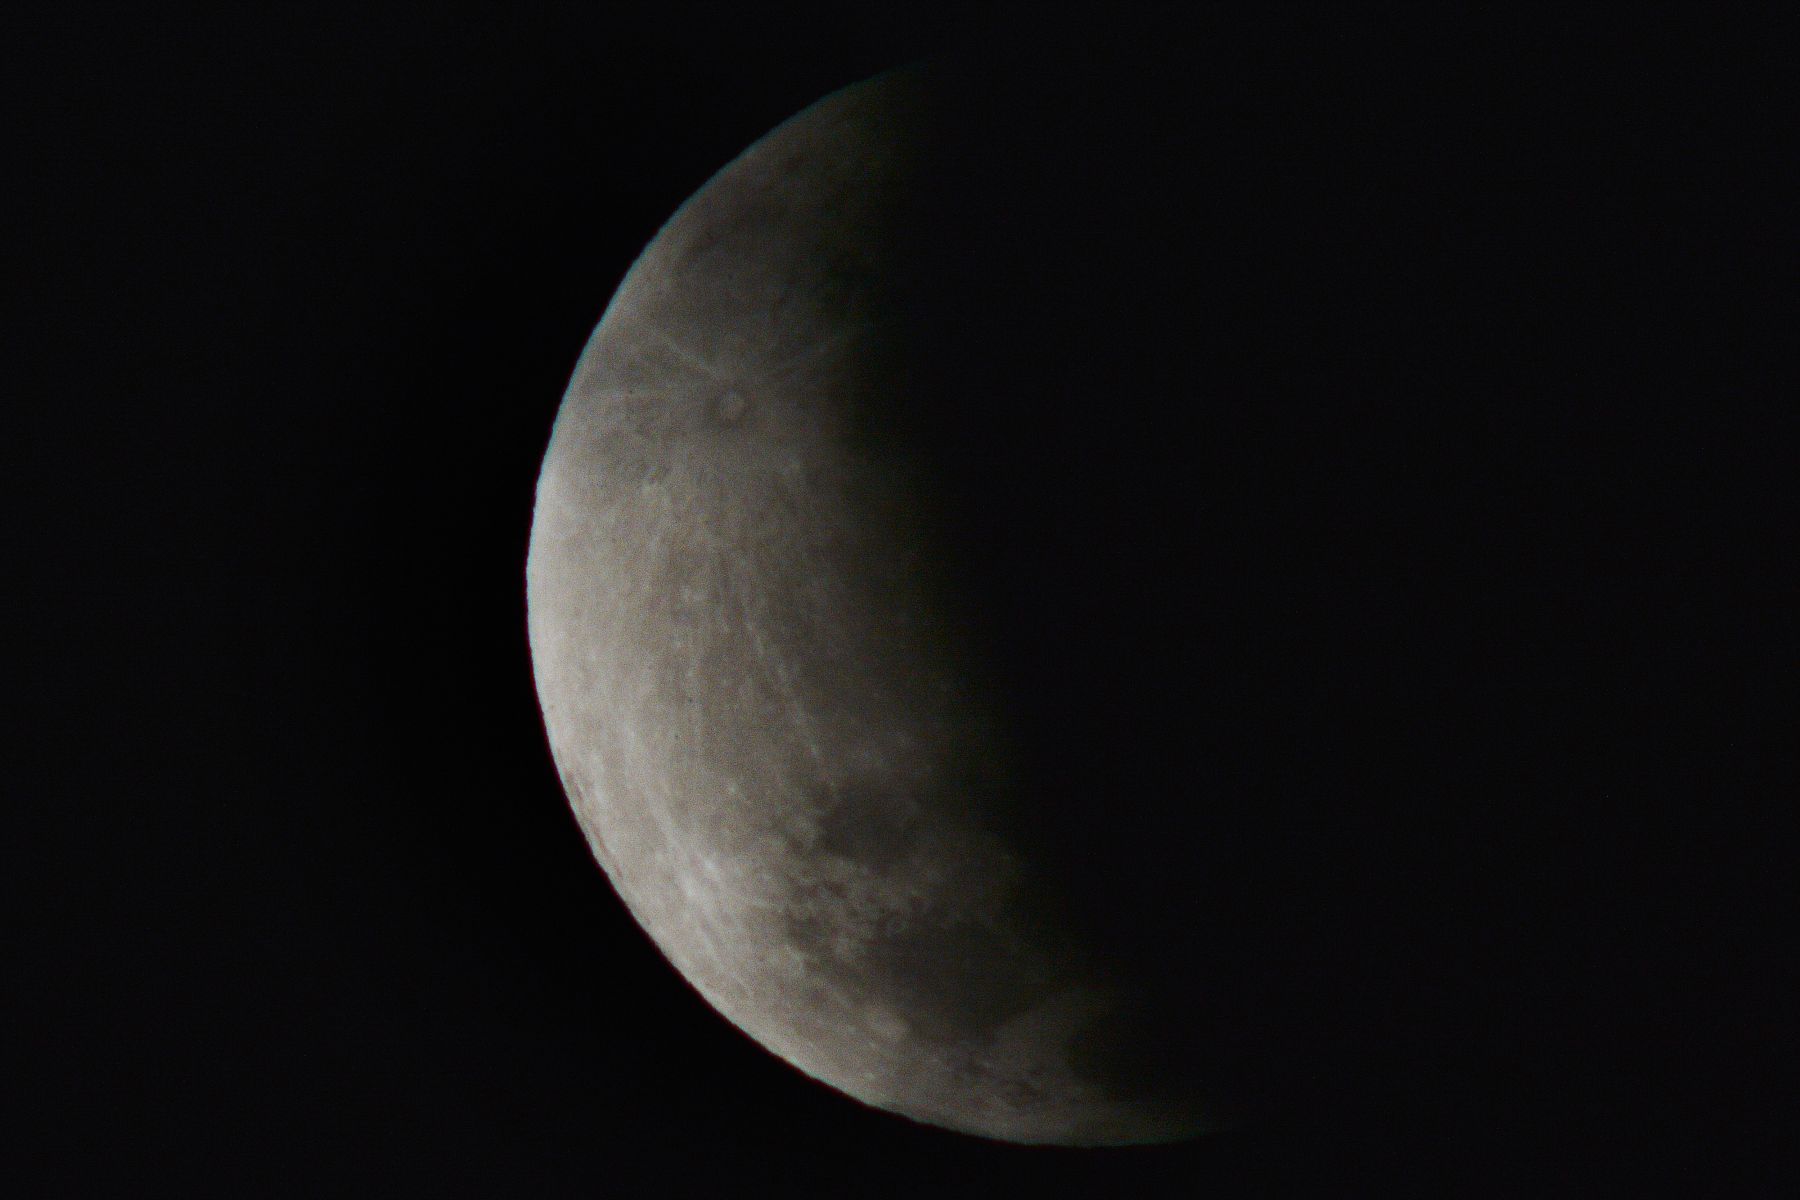 November gerhana bulan 19 Tata Cara